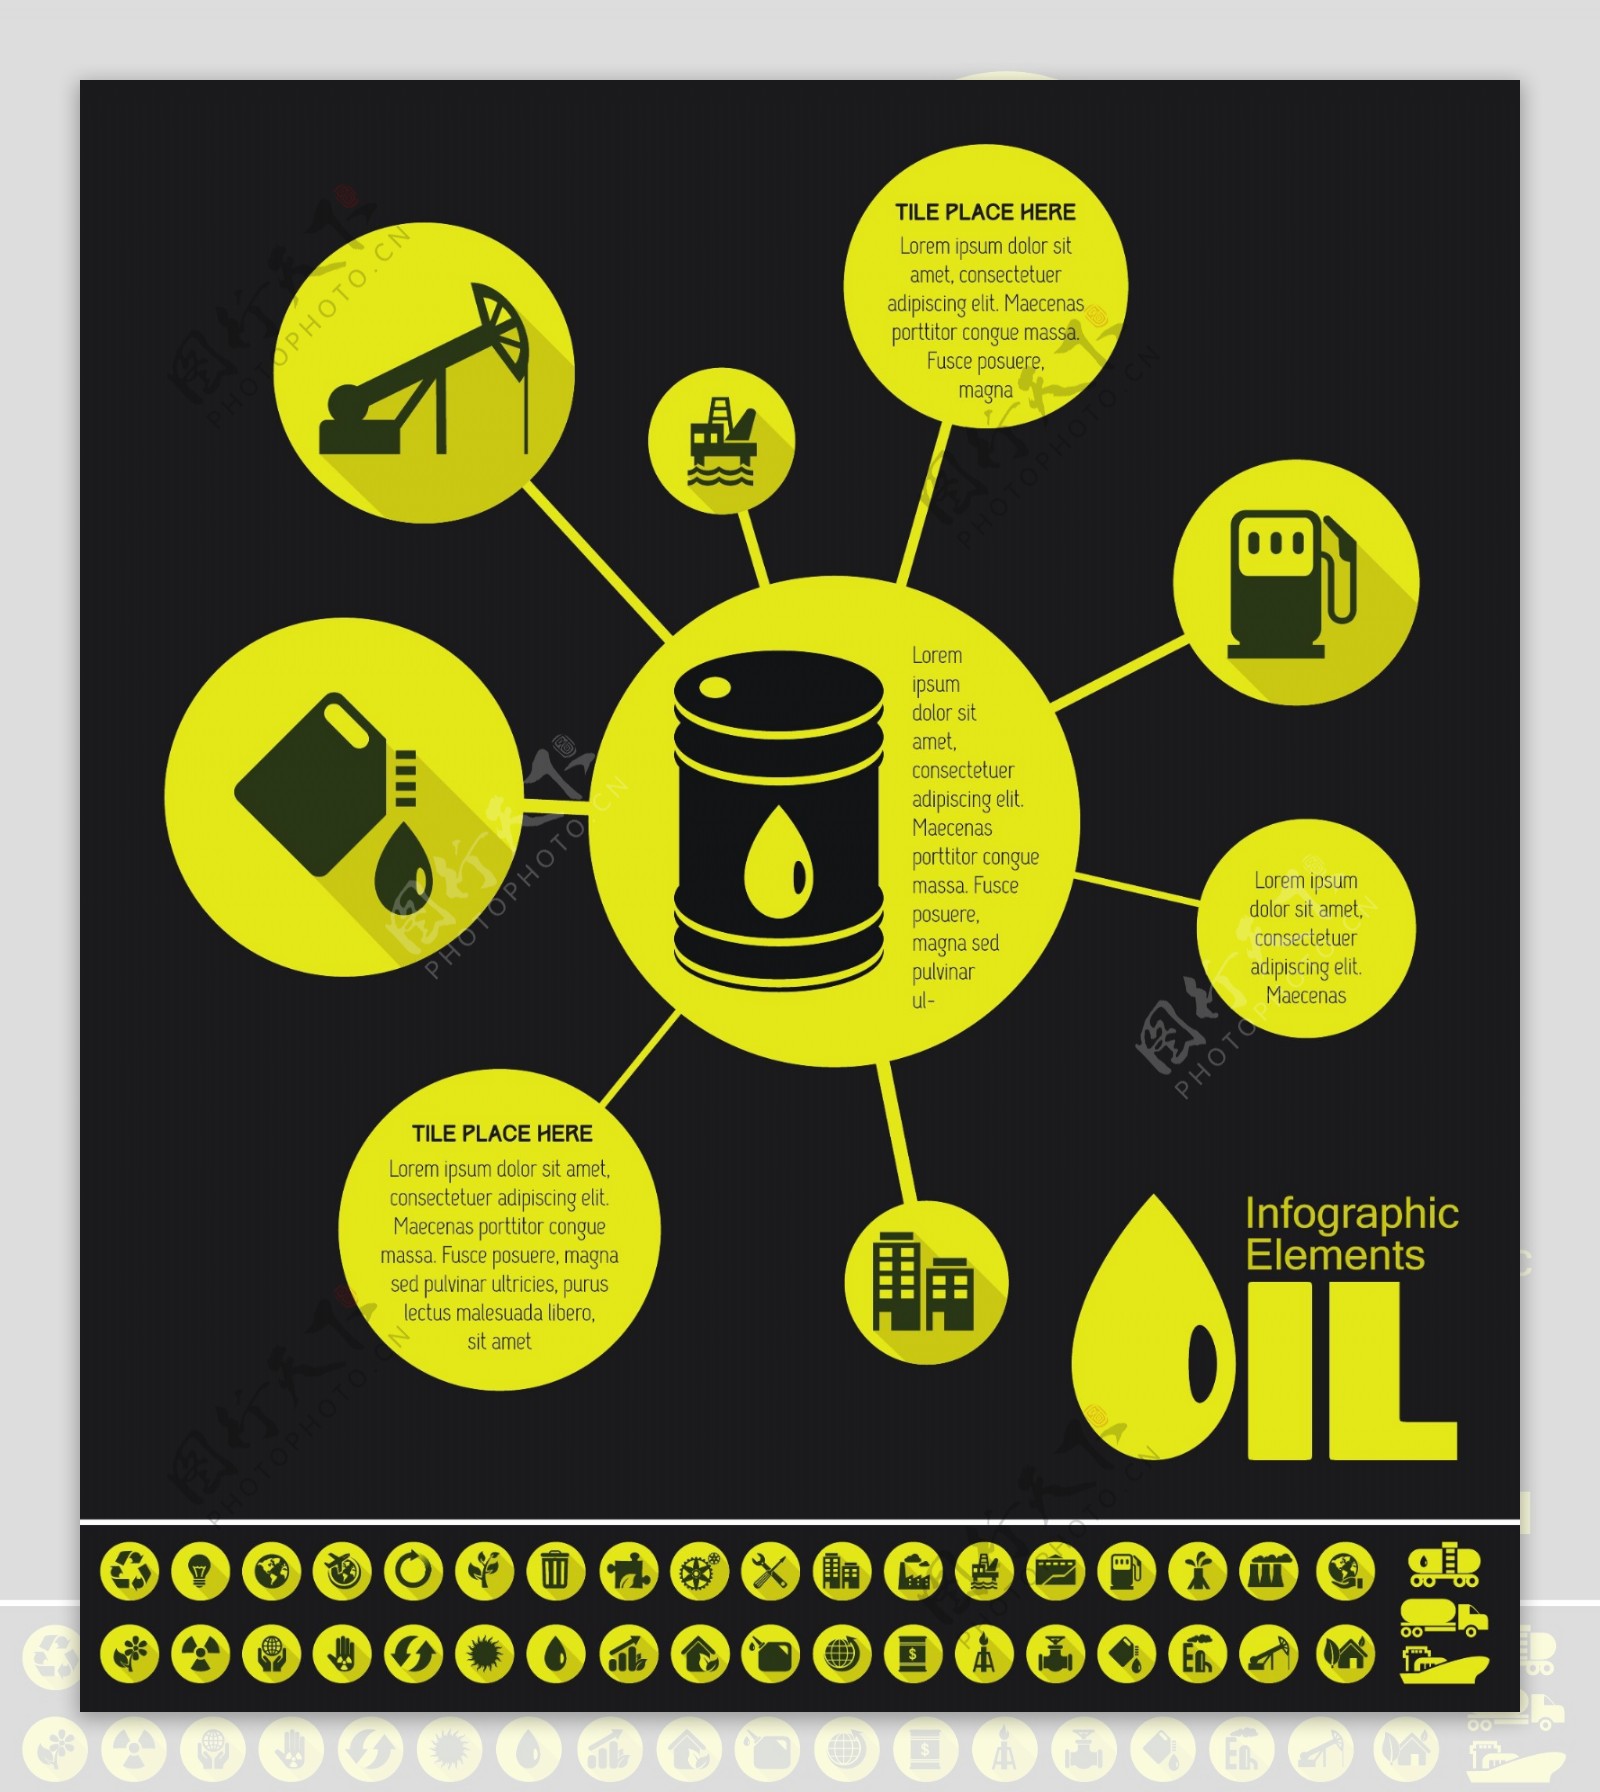 石油标签图标图片